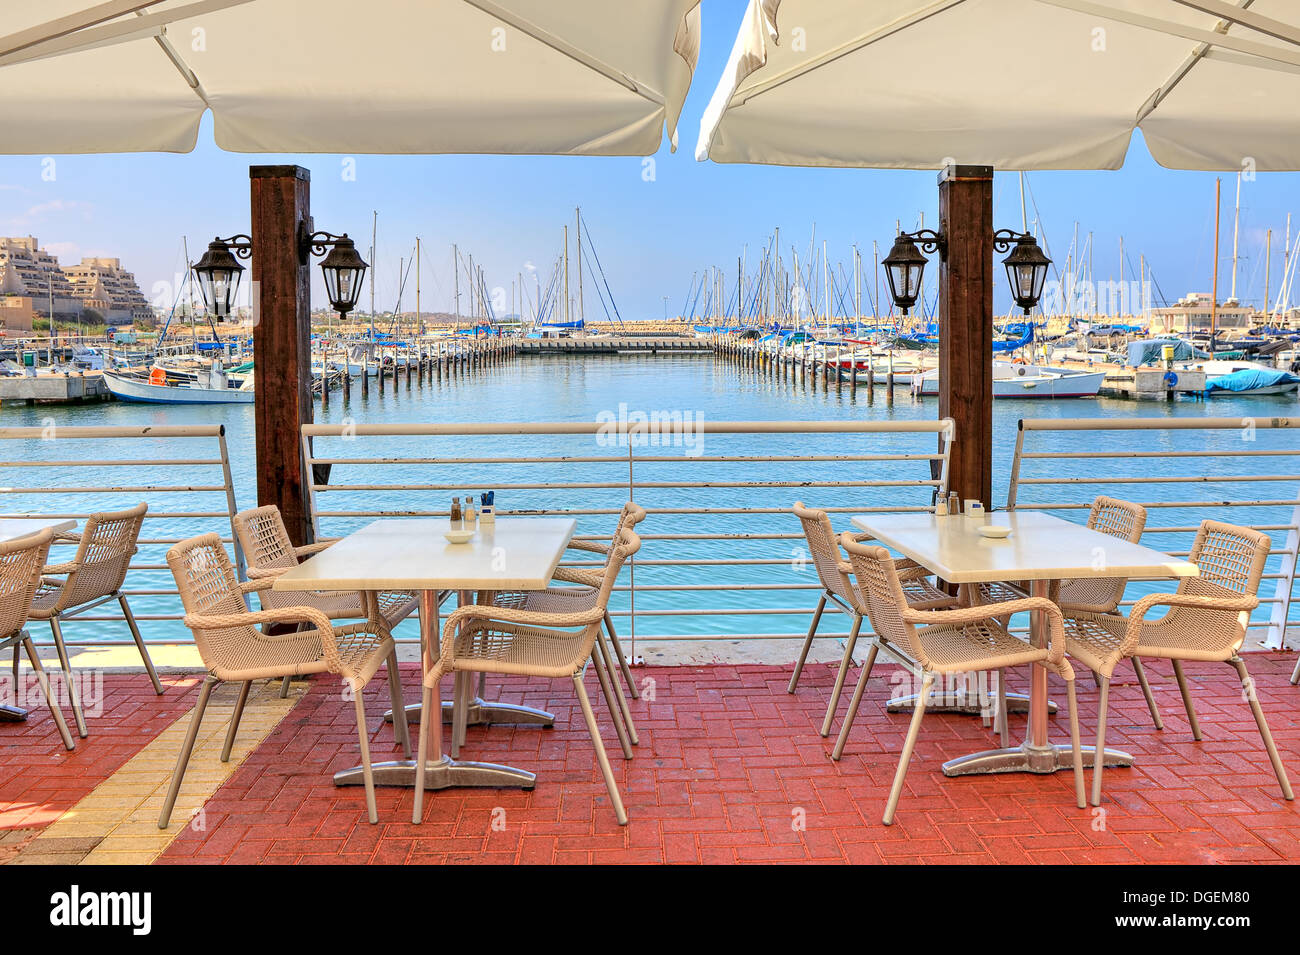 Des tables et des chaises blanches de restaurant en plein air sur la promenade le long de marina sur la mer Méditerranée à Ashkelon, en Israël. Banque D'Images